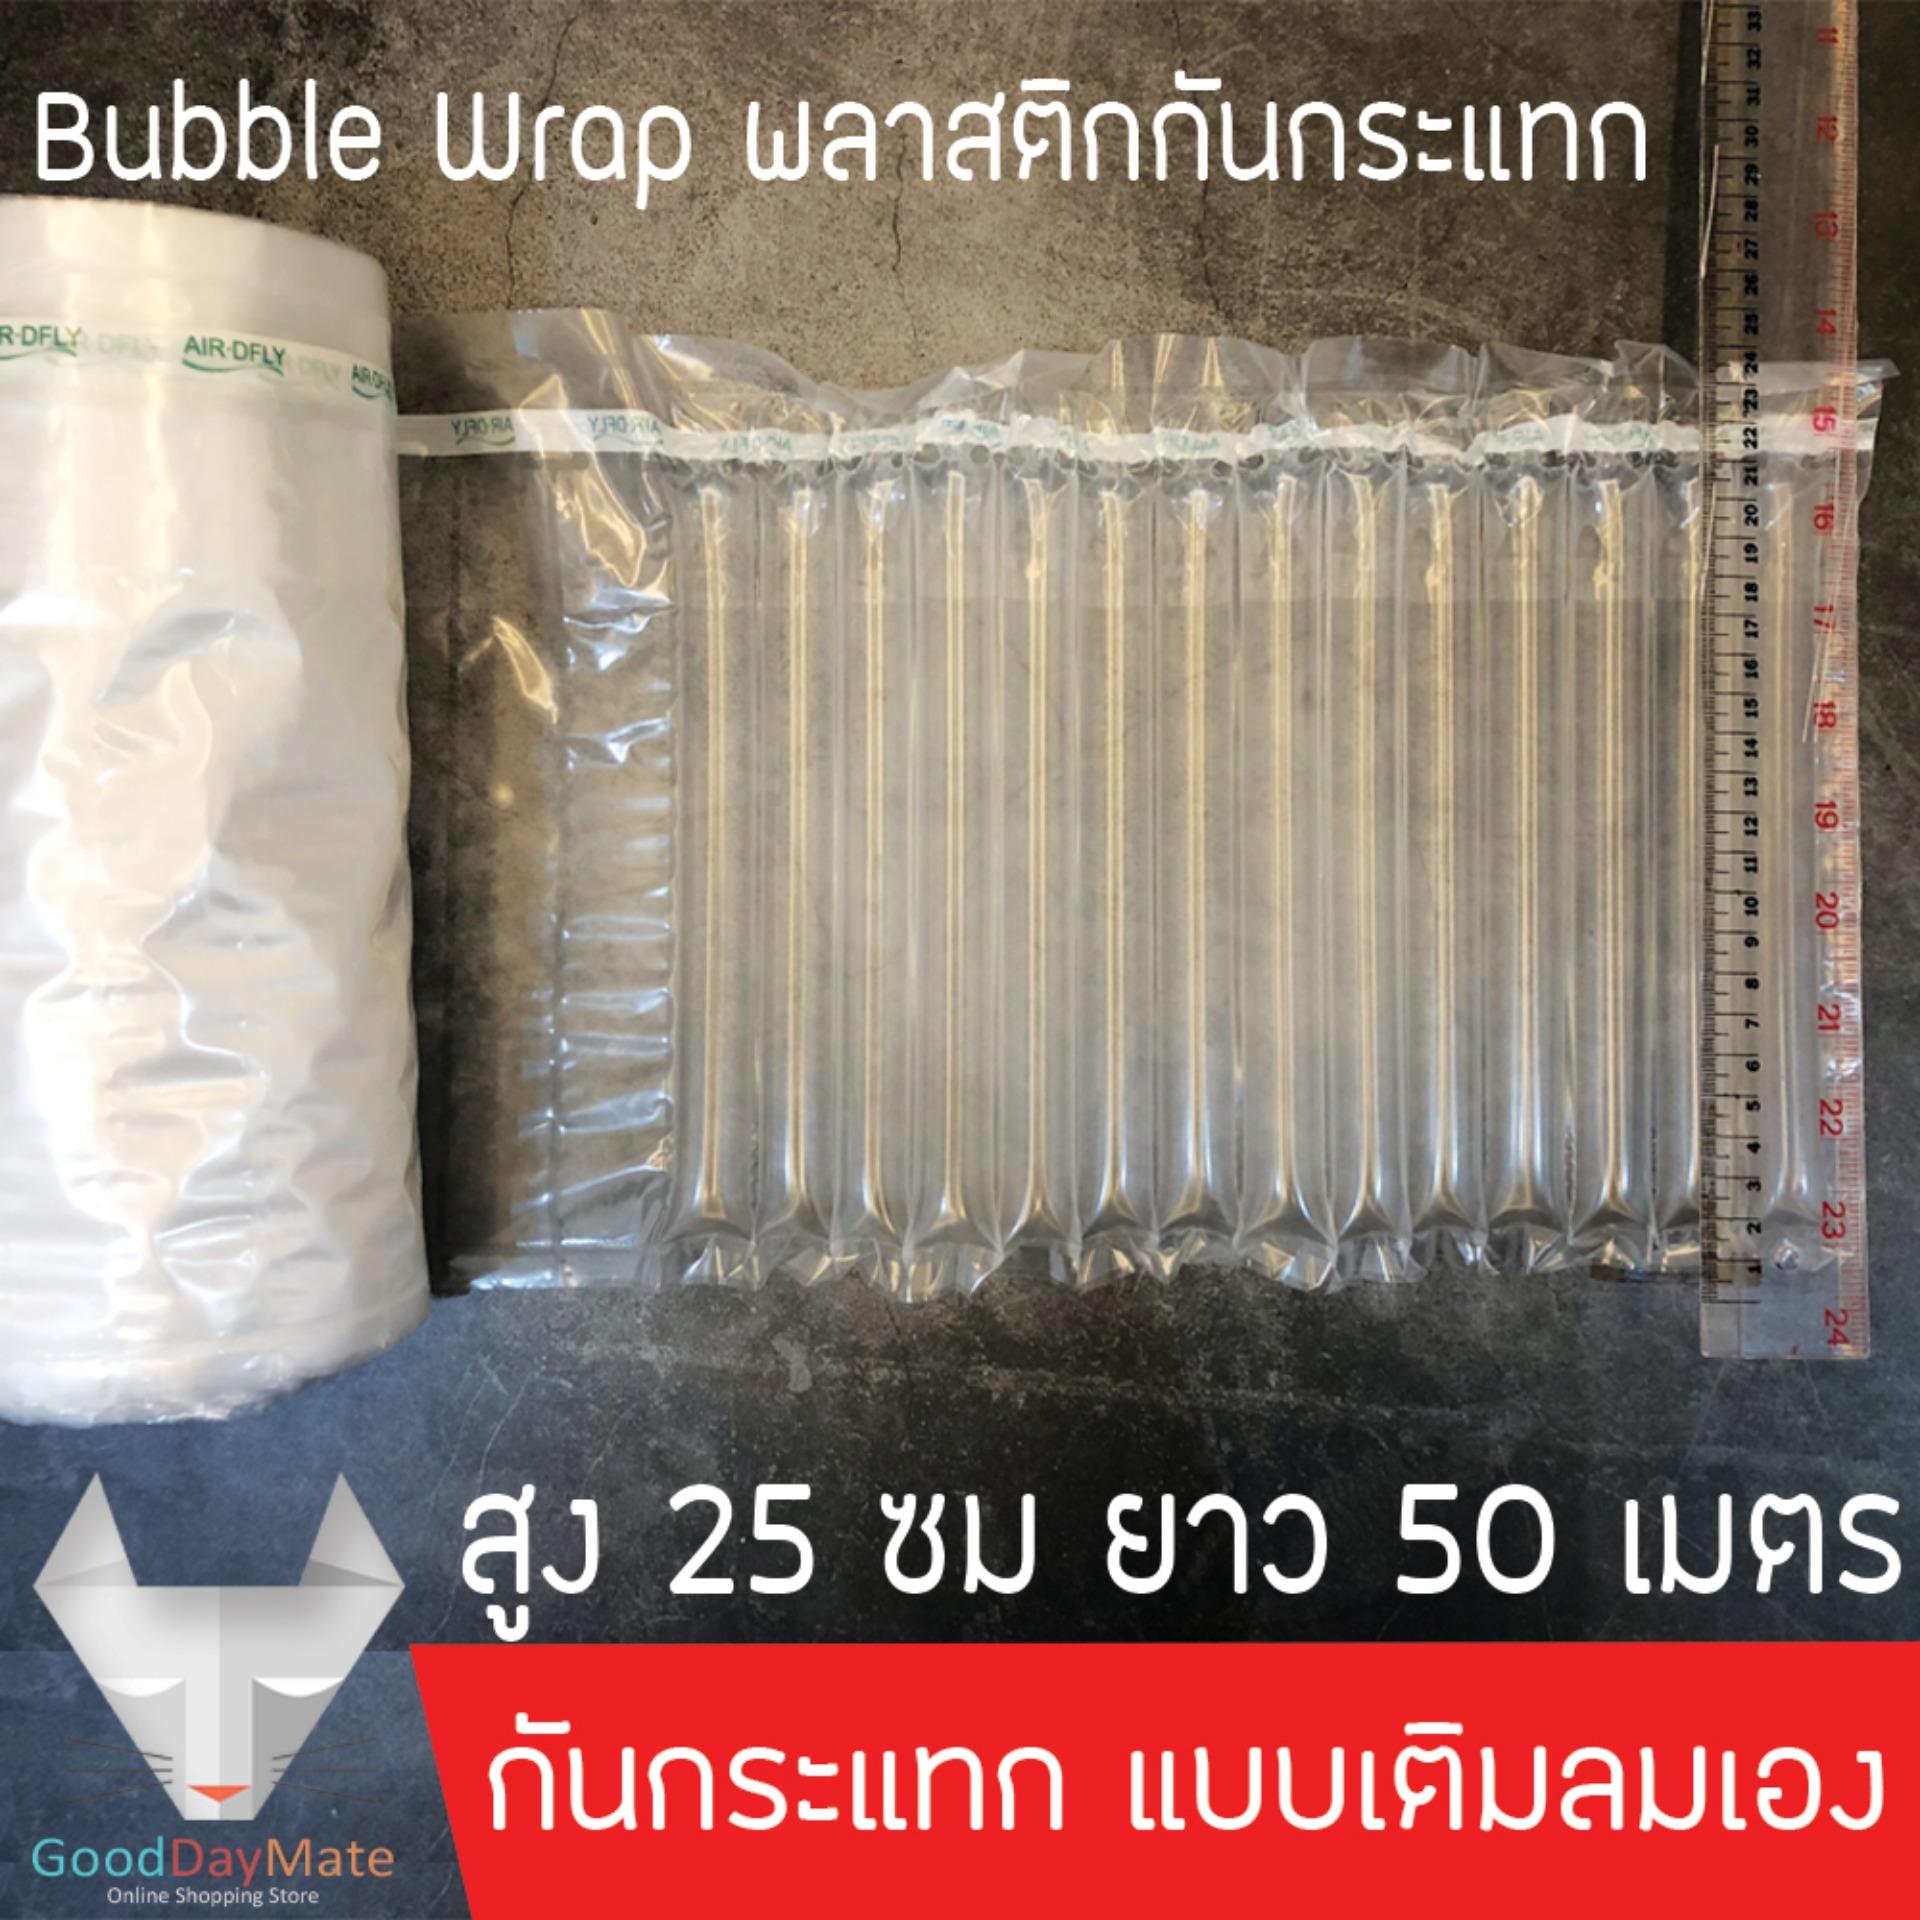 Bubble Wrap พลาสติกกันกระแทก บับเบิ้ลกันกระแทก แอร์บับเบิ้ล แบบเติมลม เติมลมเอง Inflatable ขนาดสูง 25 ซม 1ม้วน ยาว 50 เมตร